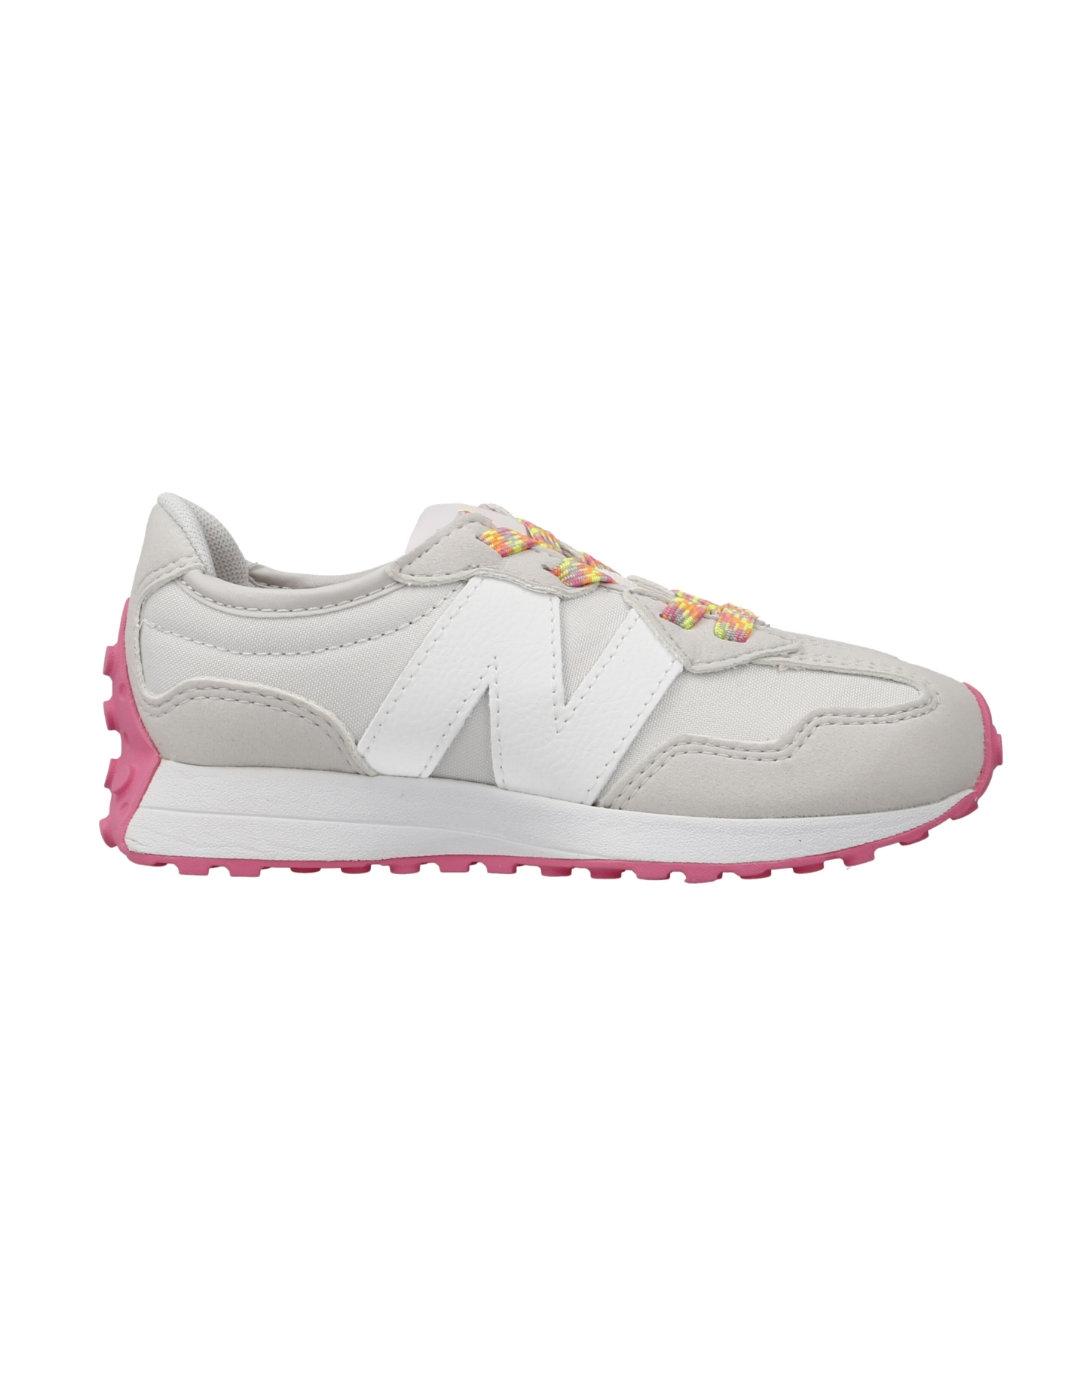 Zapatilla New Balance 327 gris y rosa para niña